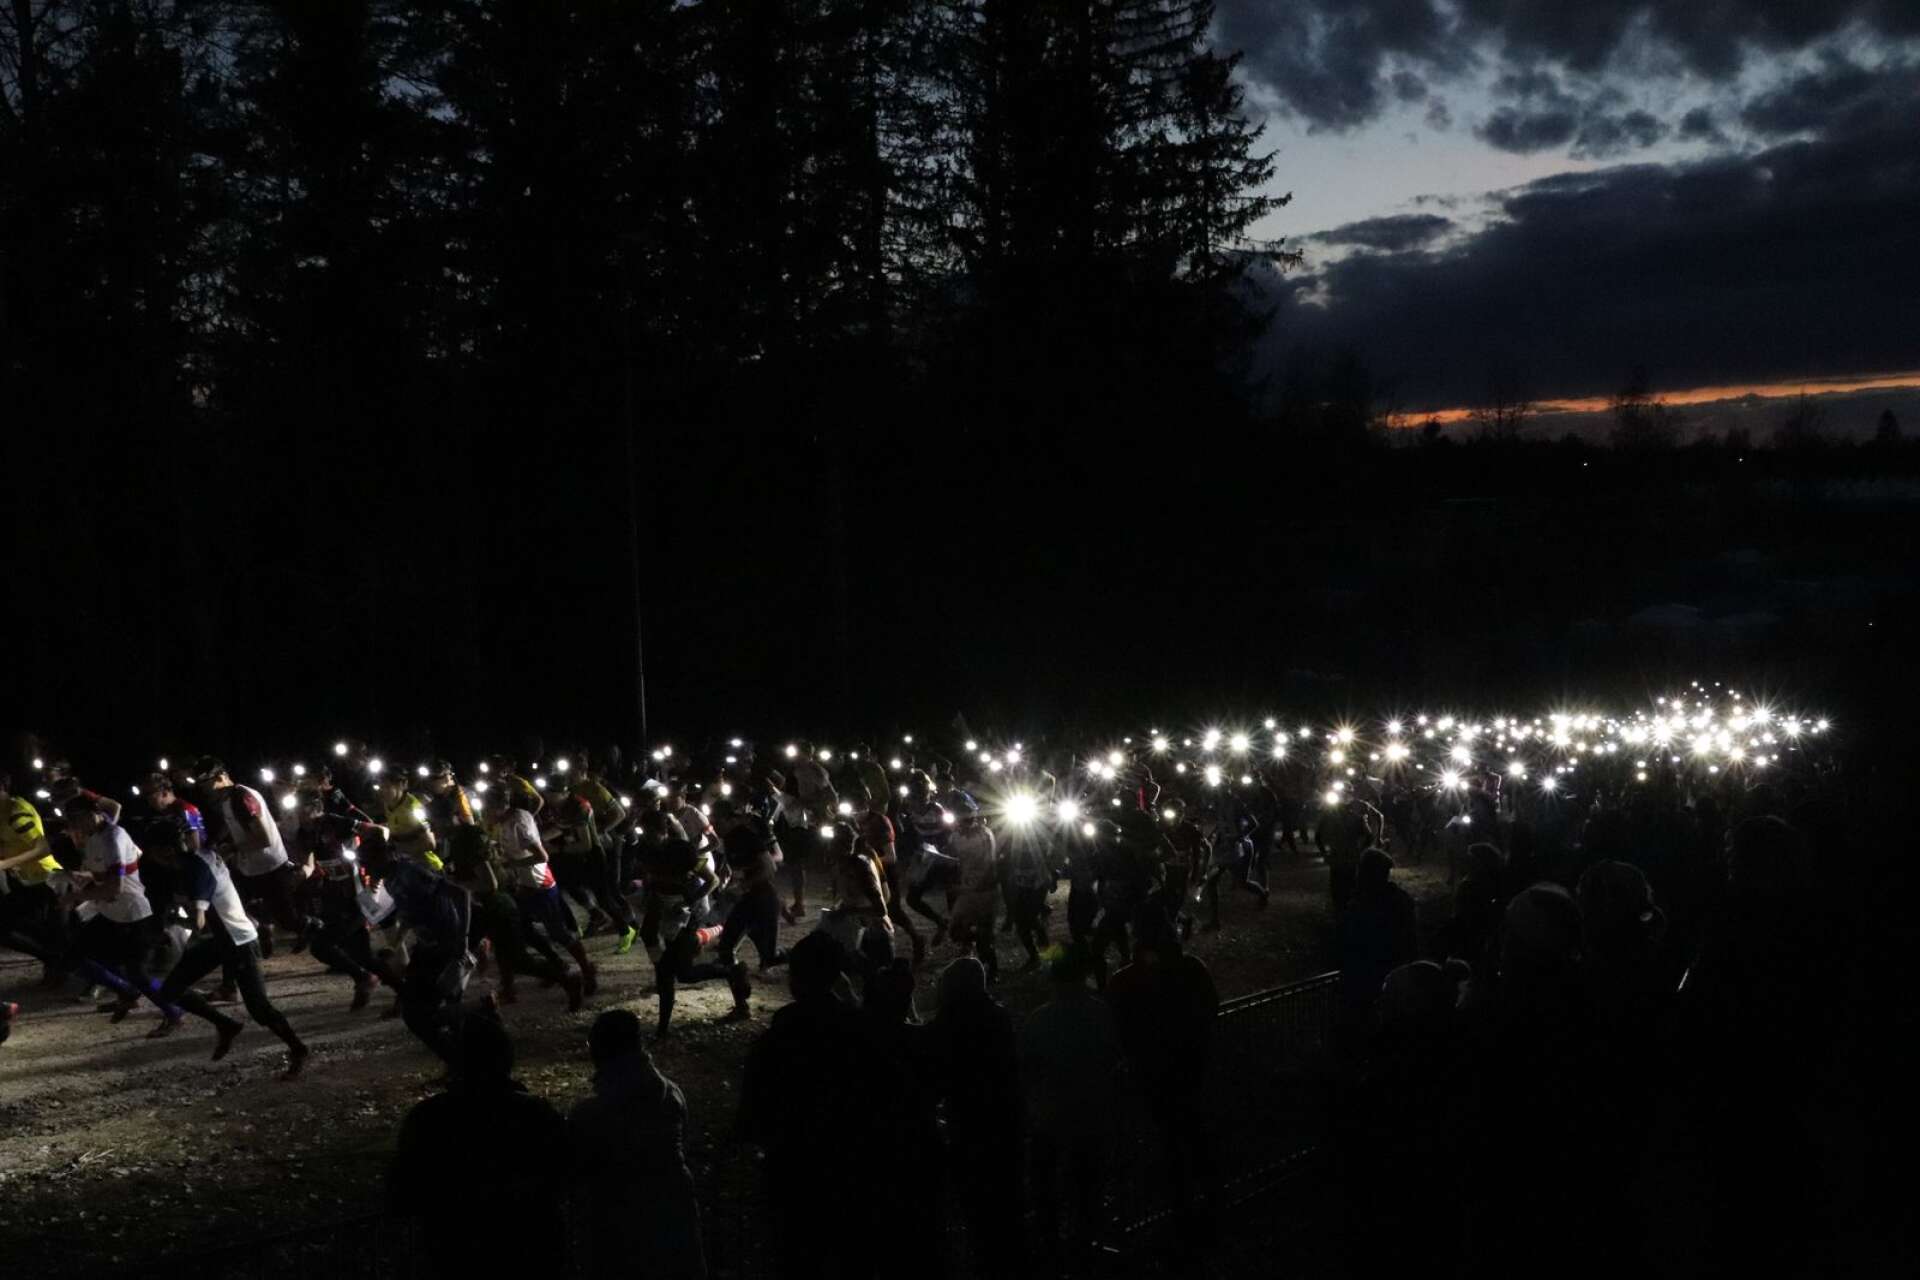 Drygt 300 pannlampor ger sig ut i Tiomilanatten i Kilsbergen på lördagskvällen. Ett mäktigt ljusskådespel.